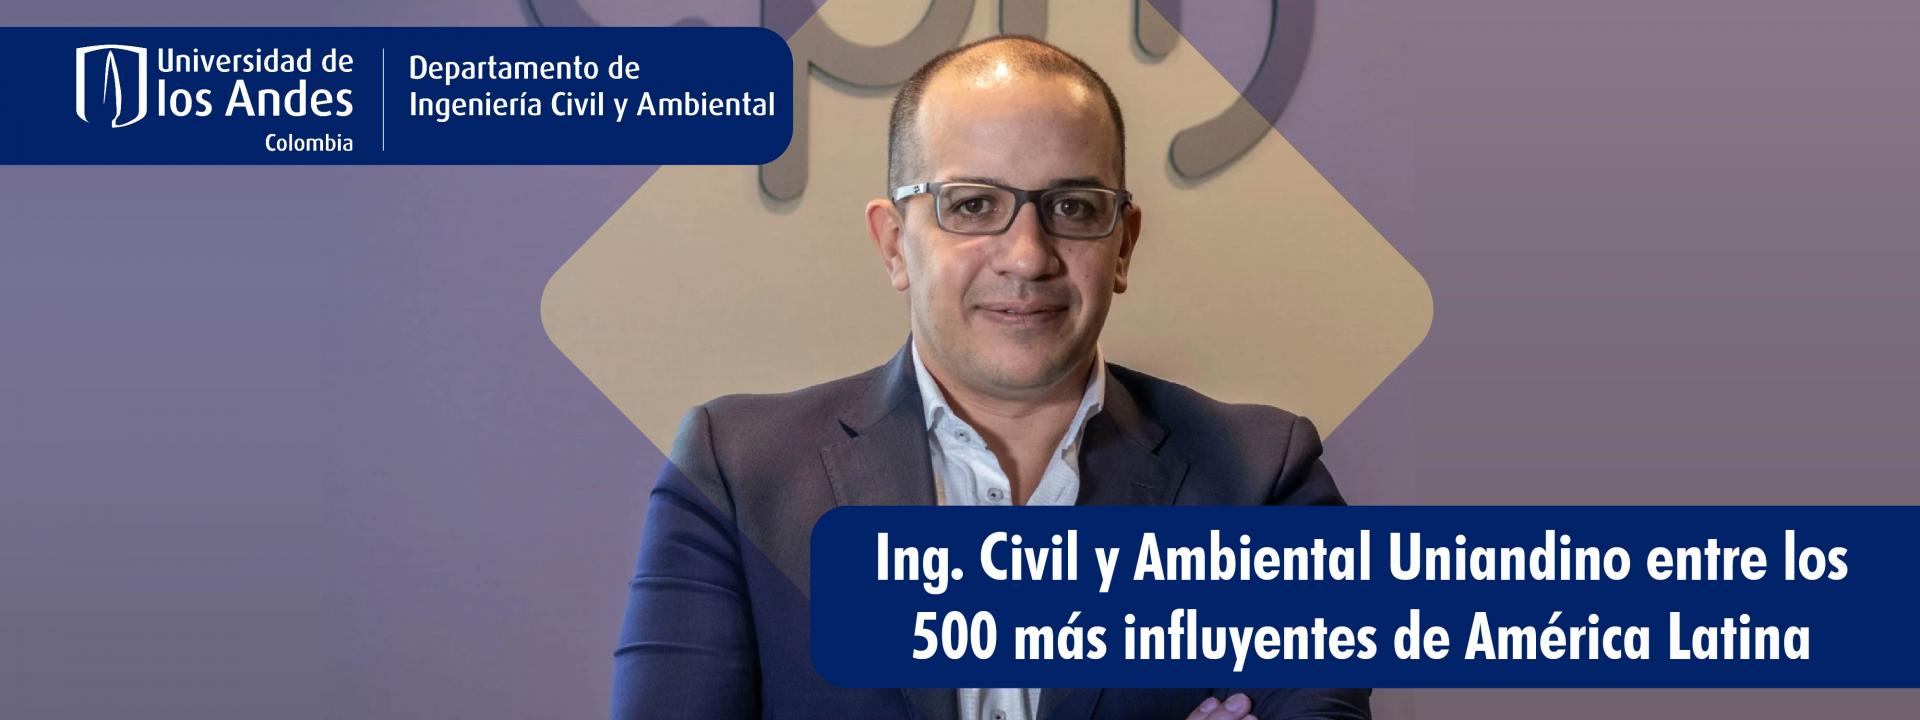 Ingeniero Civil y Ambiental uniandino Entre los 500 más influyentes de Latinoamérica